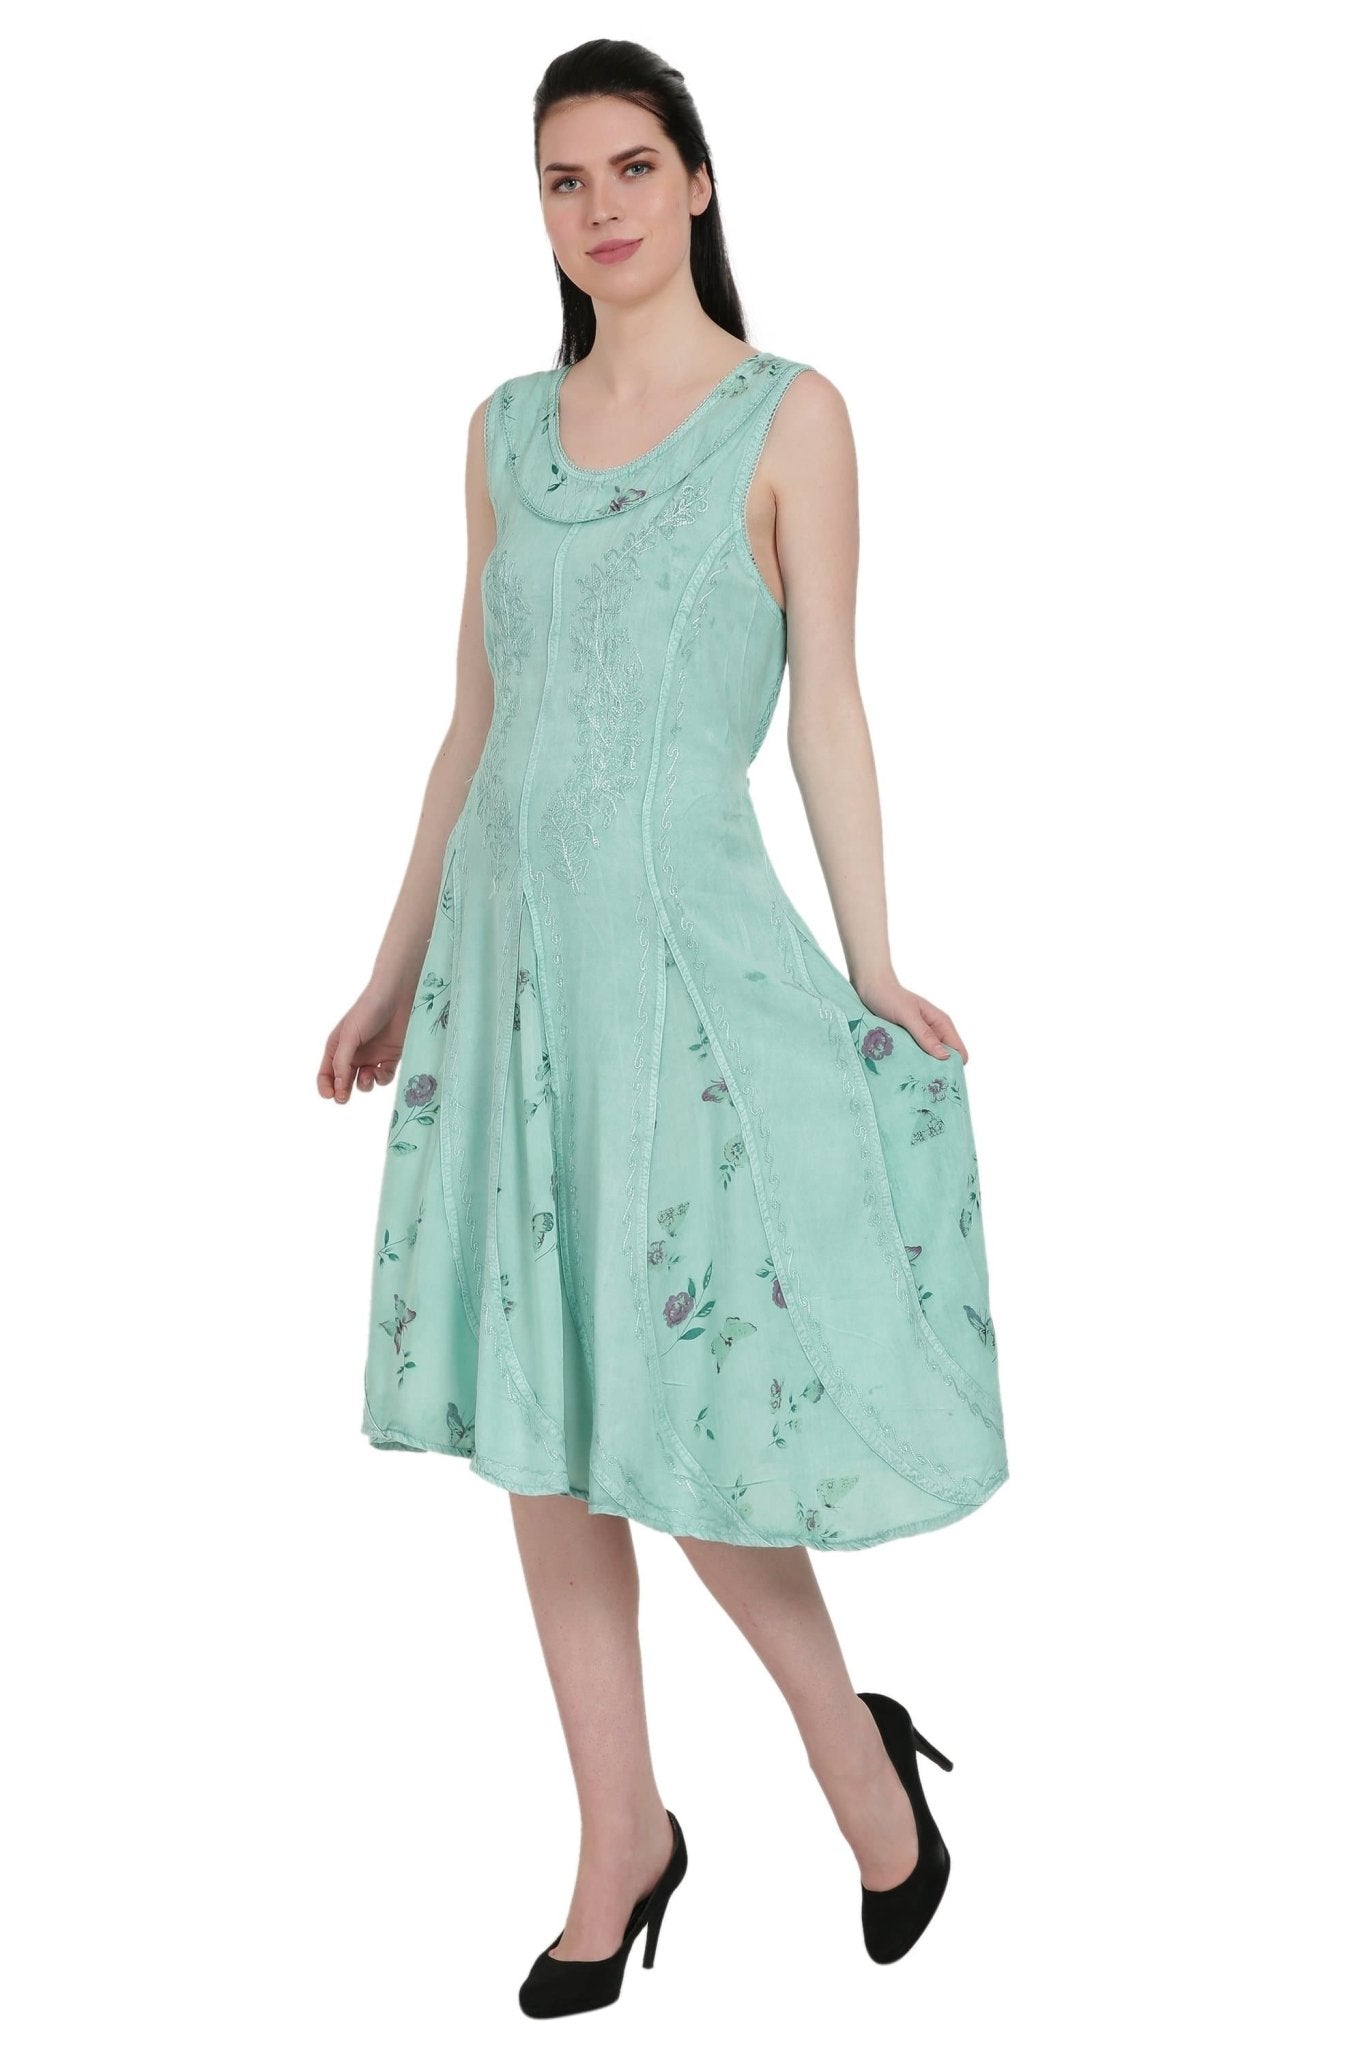 Floral Print Renaissance Dress ADL-20320 - Advance Apparels Inc